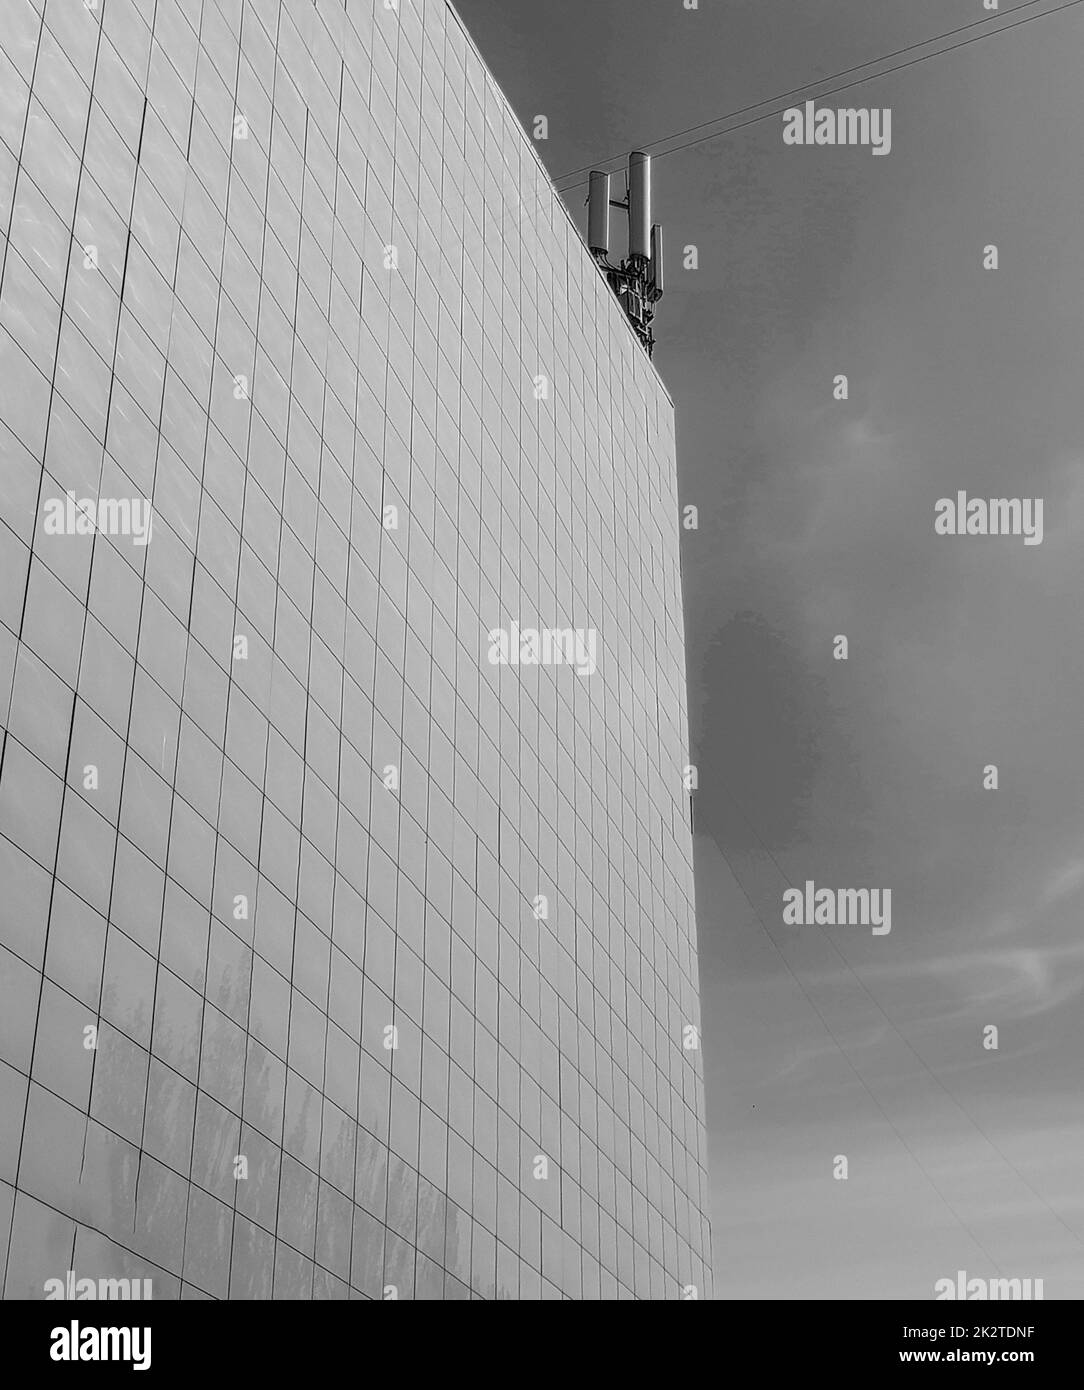 Photo en noir et blanc le mur extérieur d'un bâtiment moderne de style commercial, lambrissé de tuiles, sur le toit des antennes modernes contre le ciel Banque D'Images